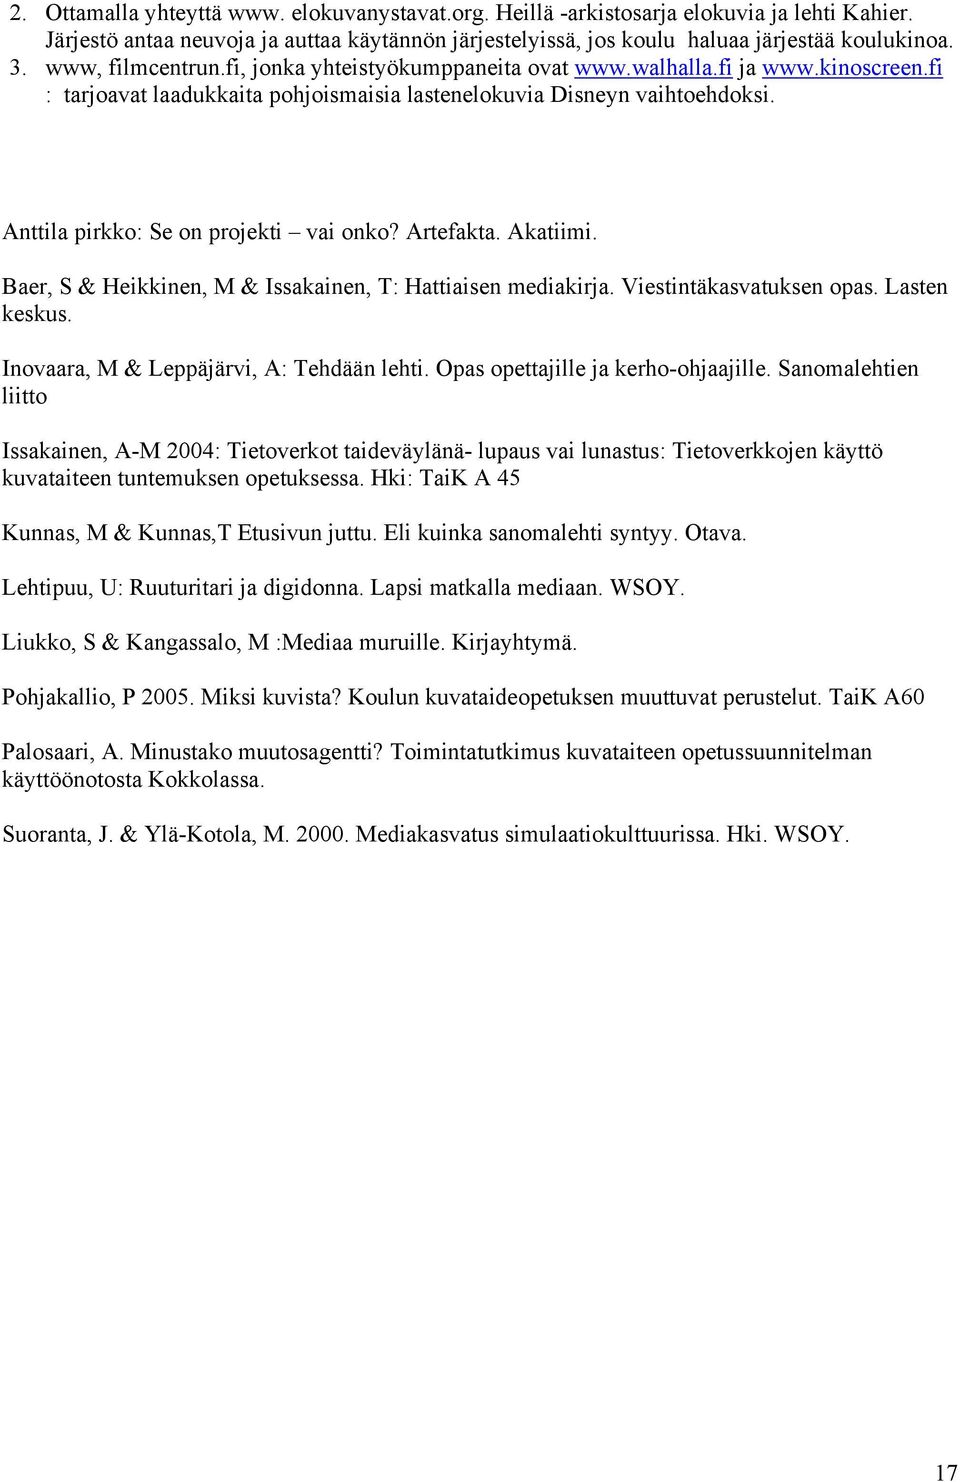 Anttila pirkko: Se on projekti vai onko? Artefakta. Akatiimi. Baer, S & Heikkinen, M & Issakainen, T: Hattiaisen mediakirja. Viestintäkasvatuksen opas. Lasten keskus.